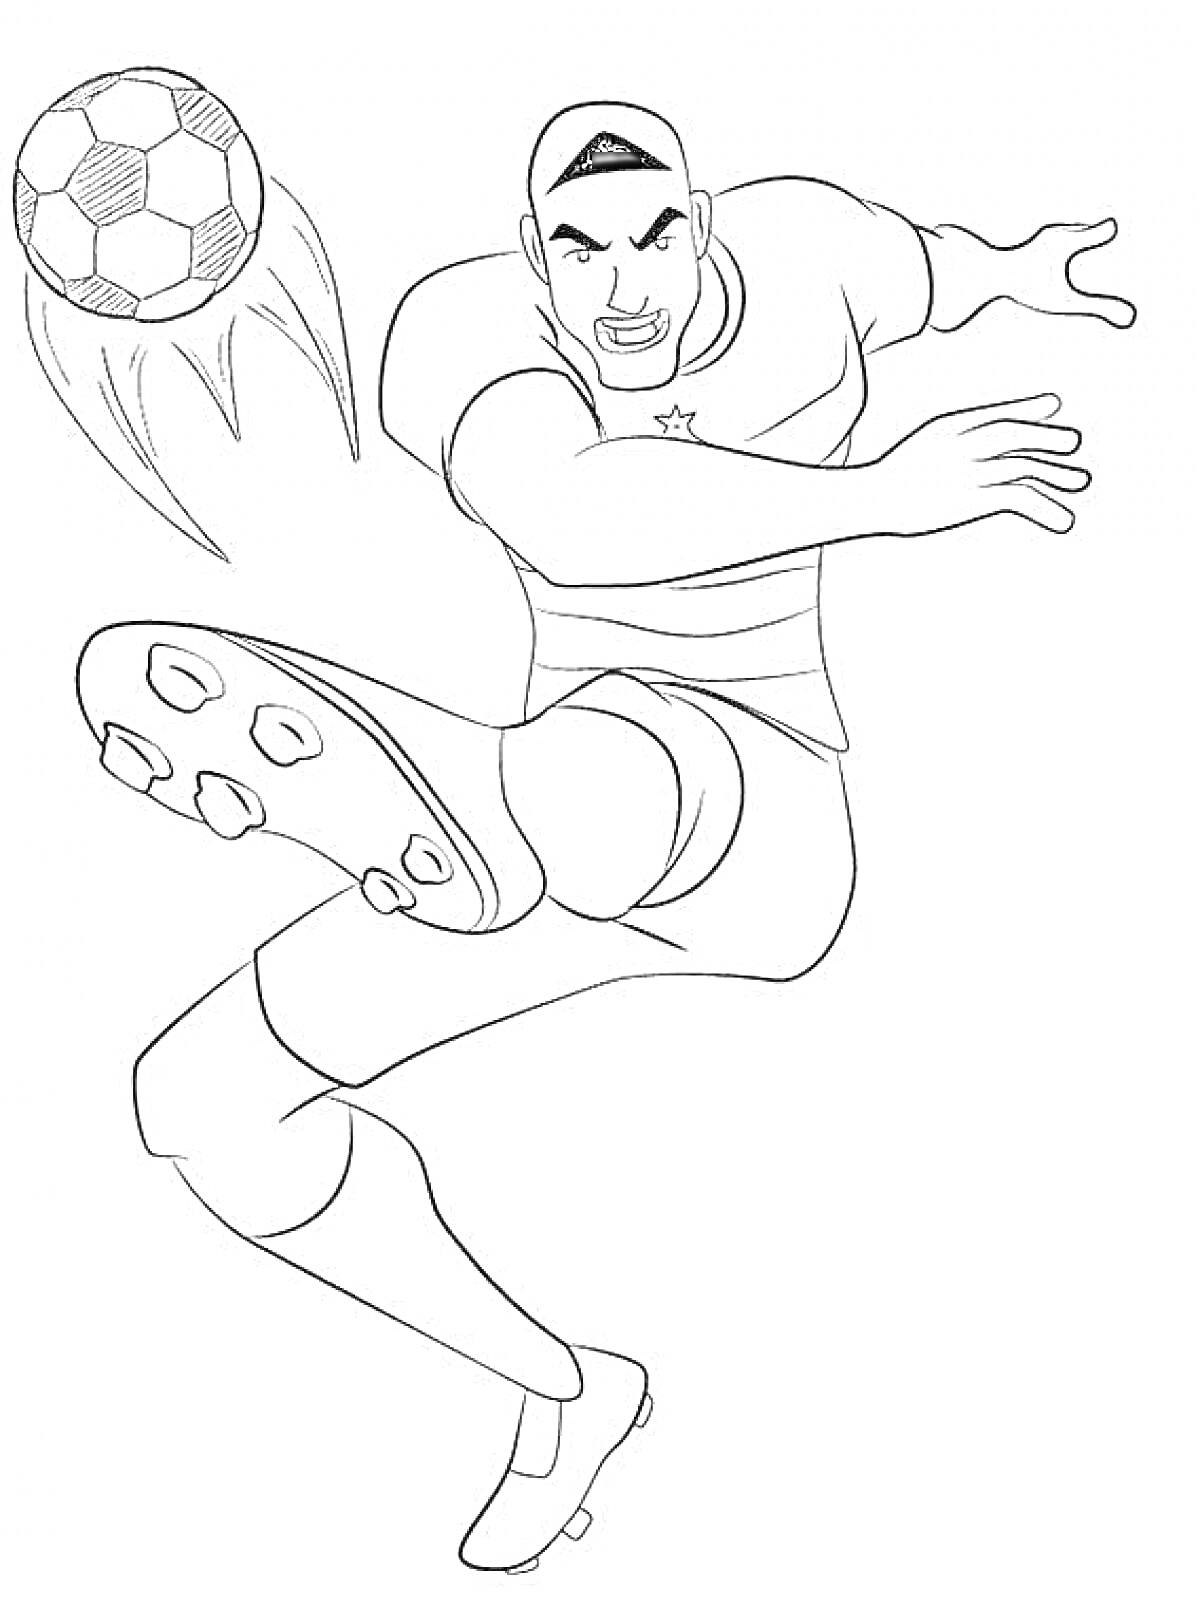 Раскраска Футболист в броске с мячом, со звездой на майке